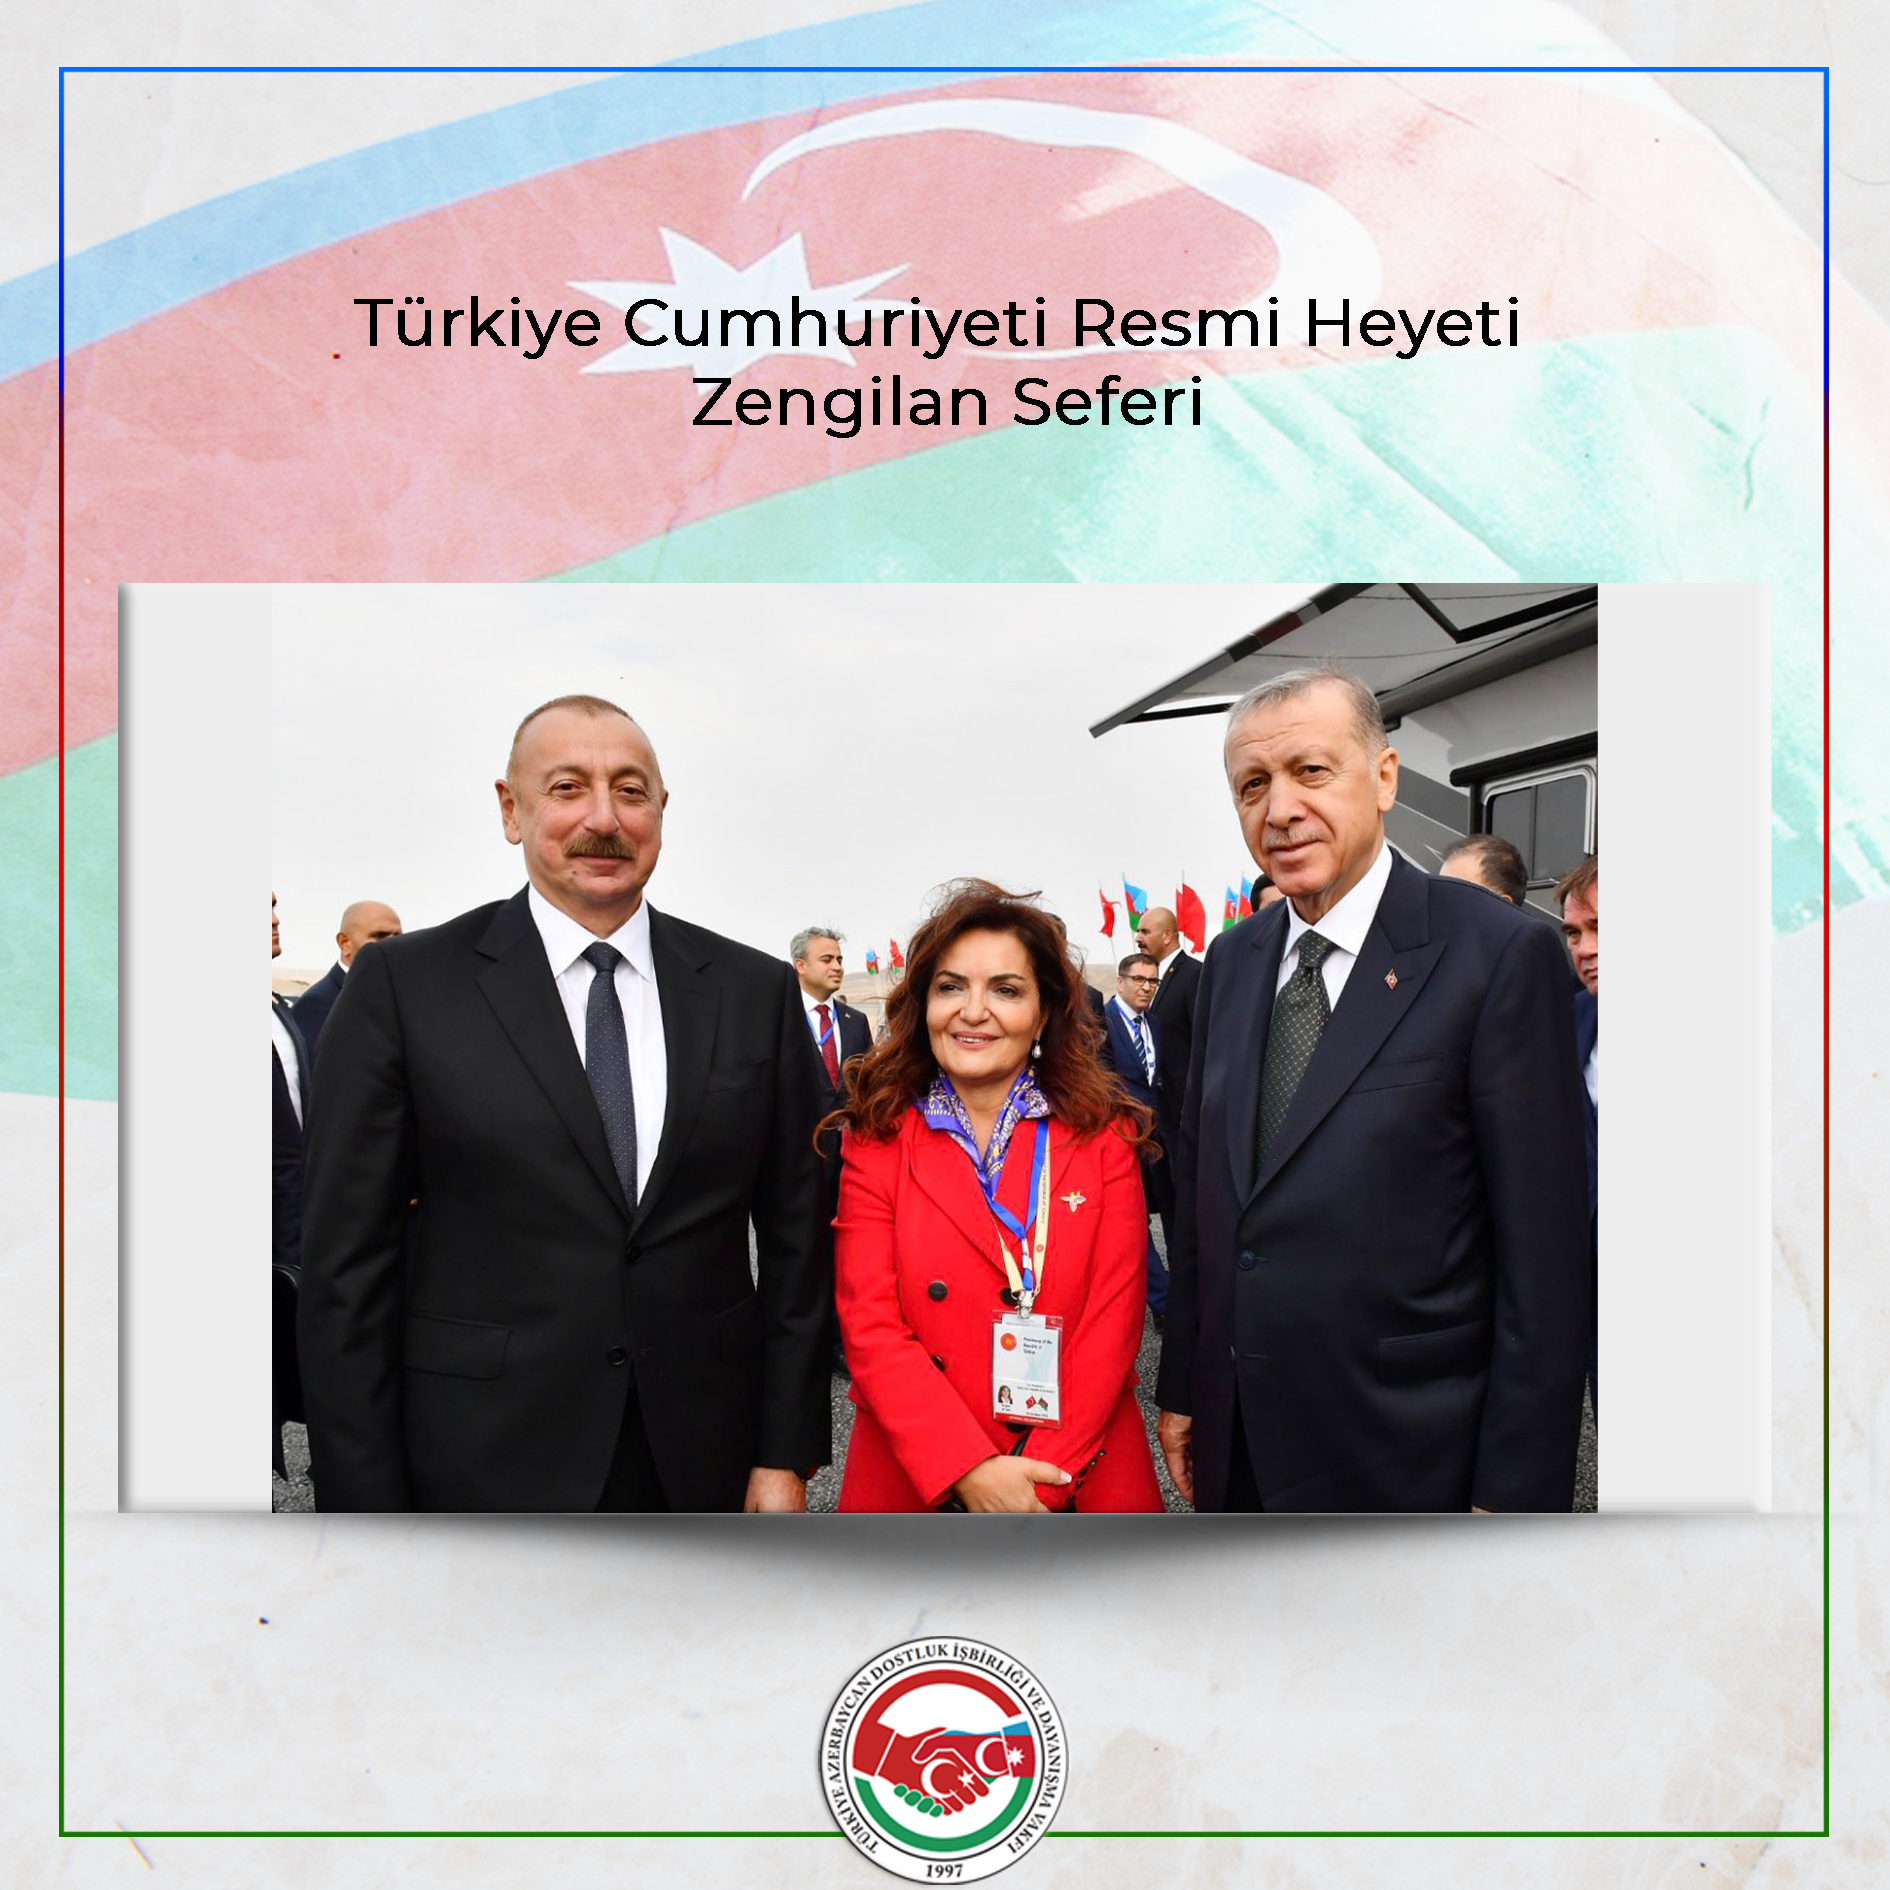 TADİV Başkanı Prof. Dr. Aygün Attar, Zengilan Uluslararası Havalimanı'nın Açılışı Resmi Heyetinde Yer Aldı.